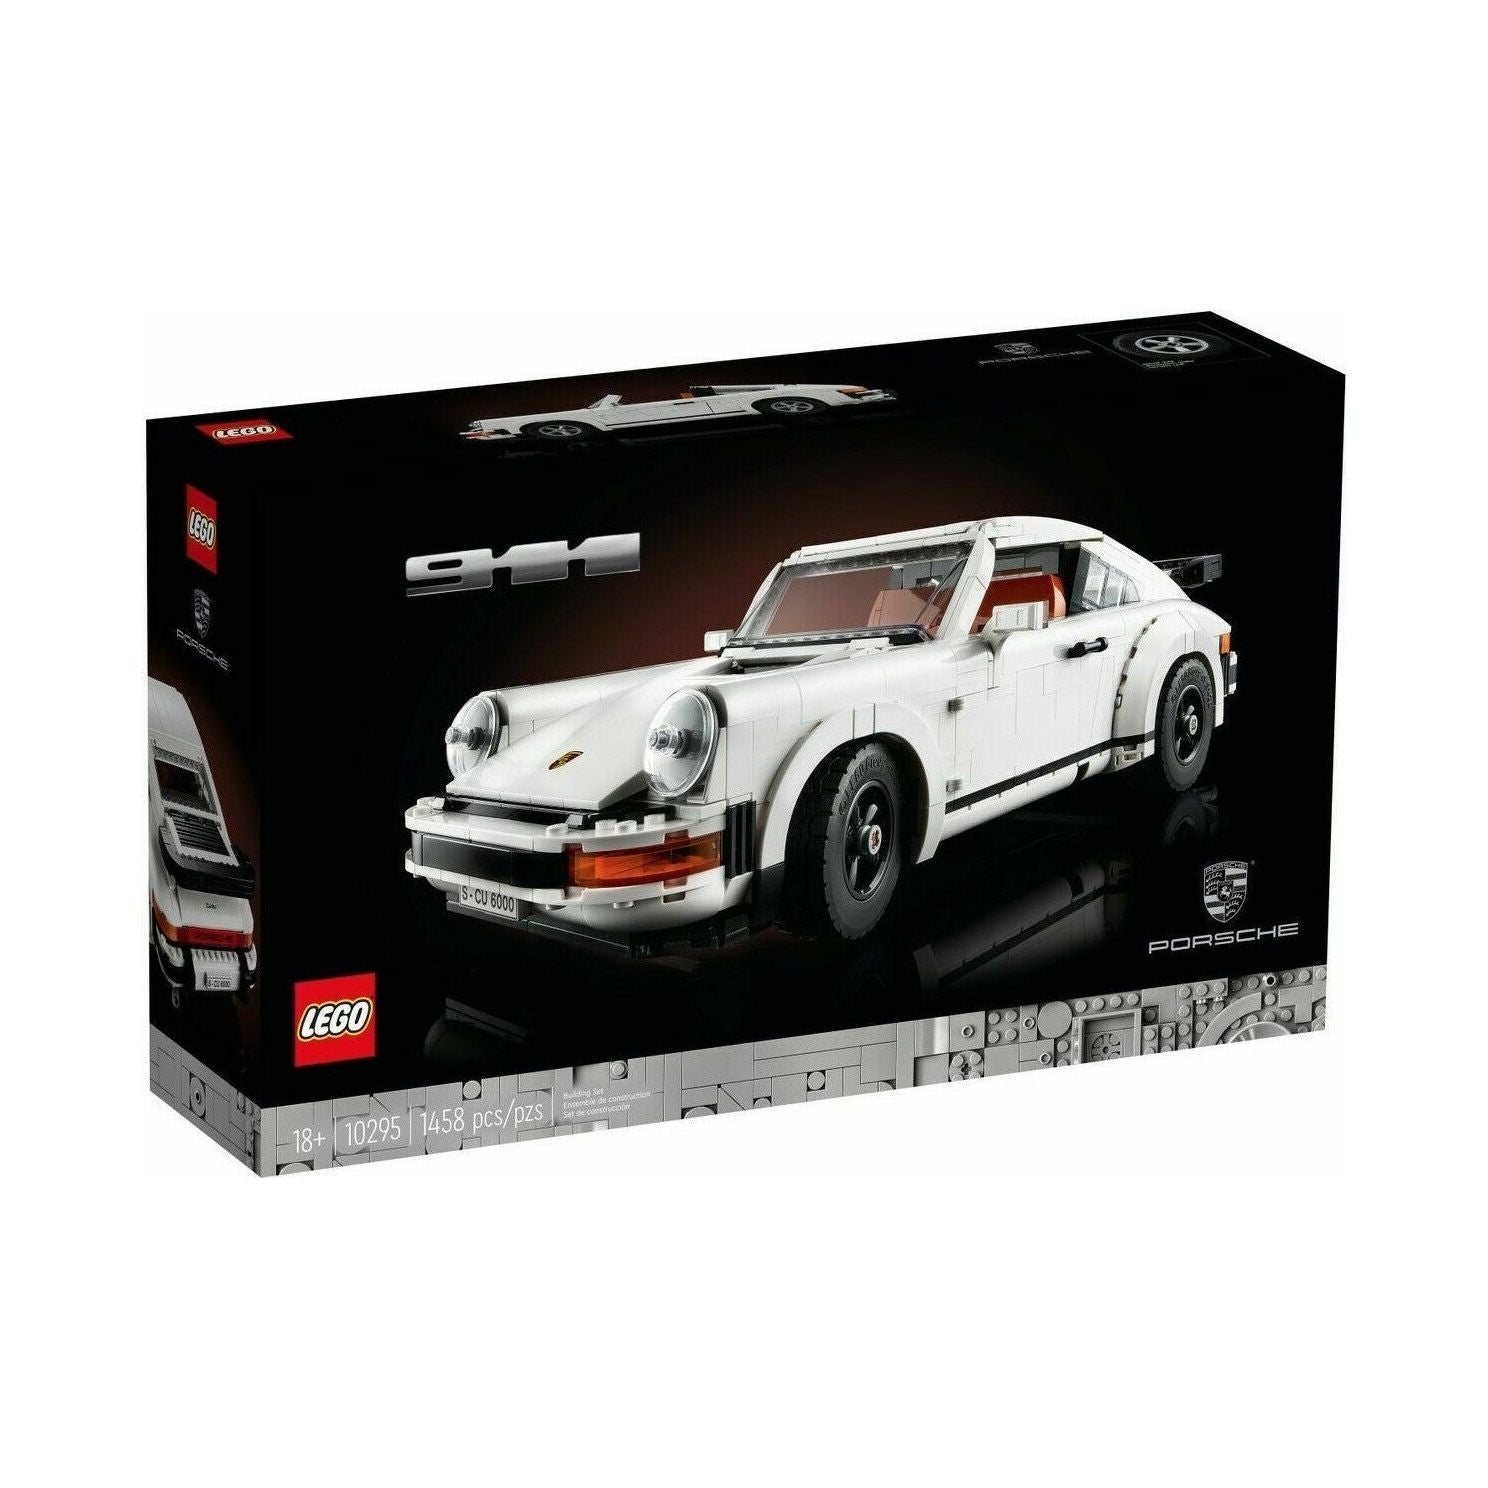 *BRAND NEW* LEGO Creator Expert | Porsche 911 | 10295 | Shipped from MEL